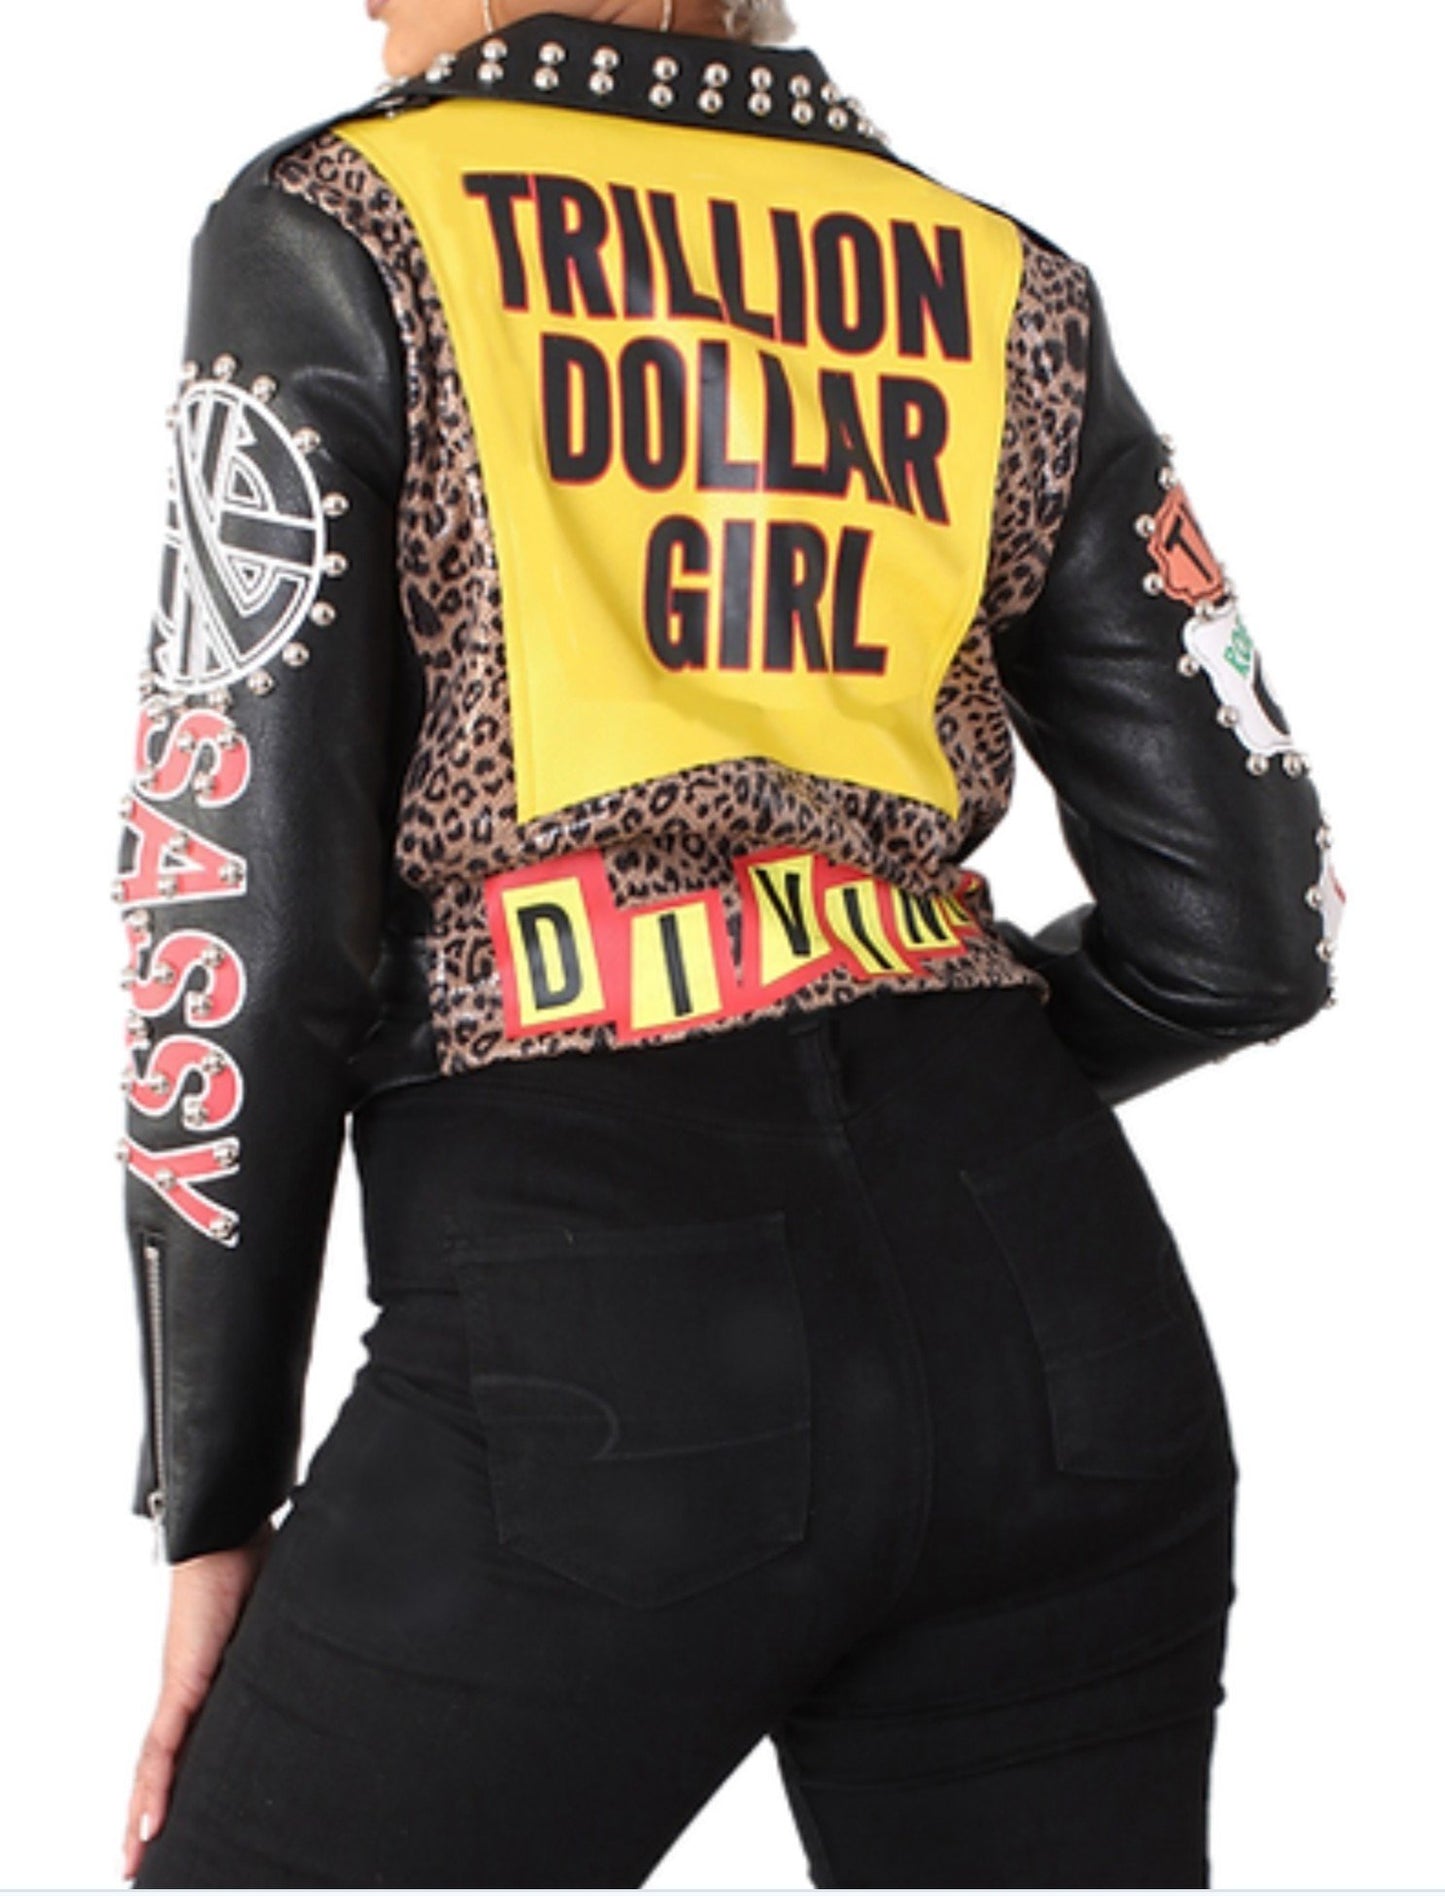 Trillon Dollar Girl Vegan Jacket